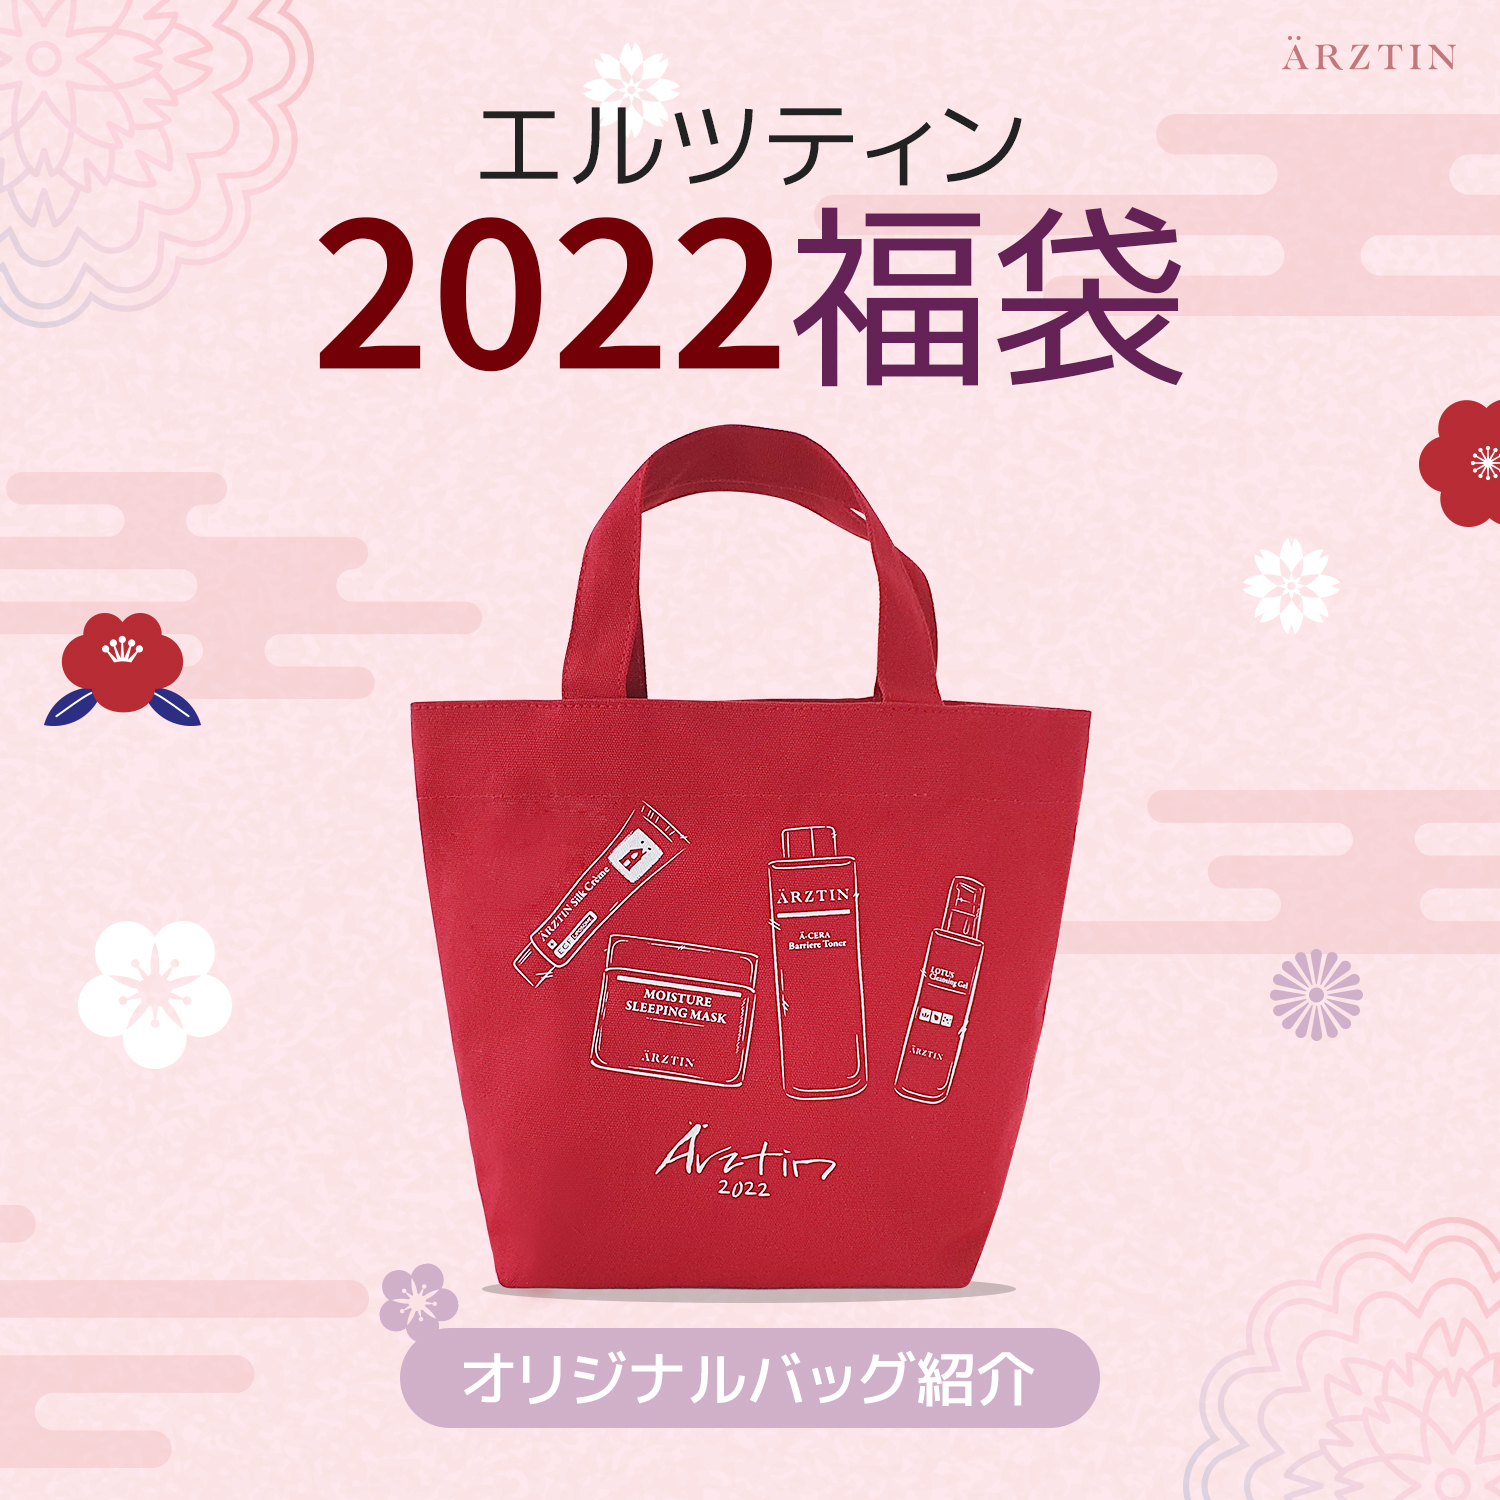 ARZTIN / 【ノベルティ紹介】2022エルツティン福袋オリジナルエコバッグ